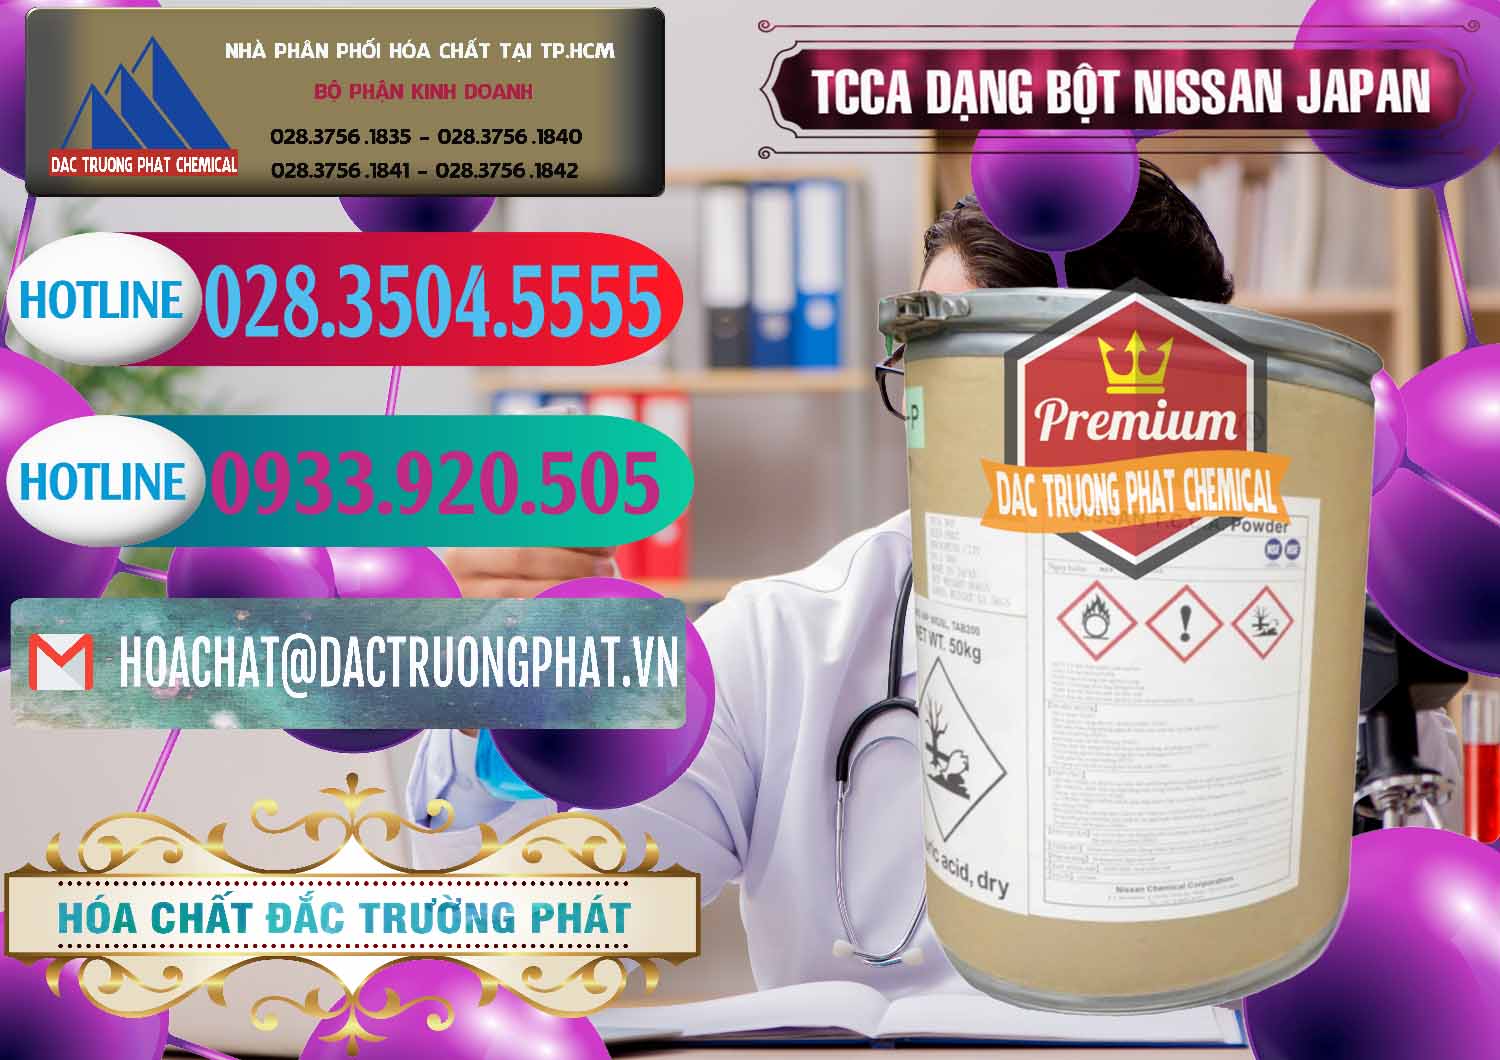 Bán & cung cấp TCCA - Acid Trichloroisocyanuric 90% Dạng Bột Nissan Nhật Bản Japan - 0375 - Công ty chuyên cung cấp ( kinh doanh ) hóa chất tại TP.HCM - truongphat.vn